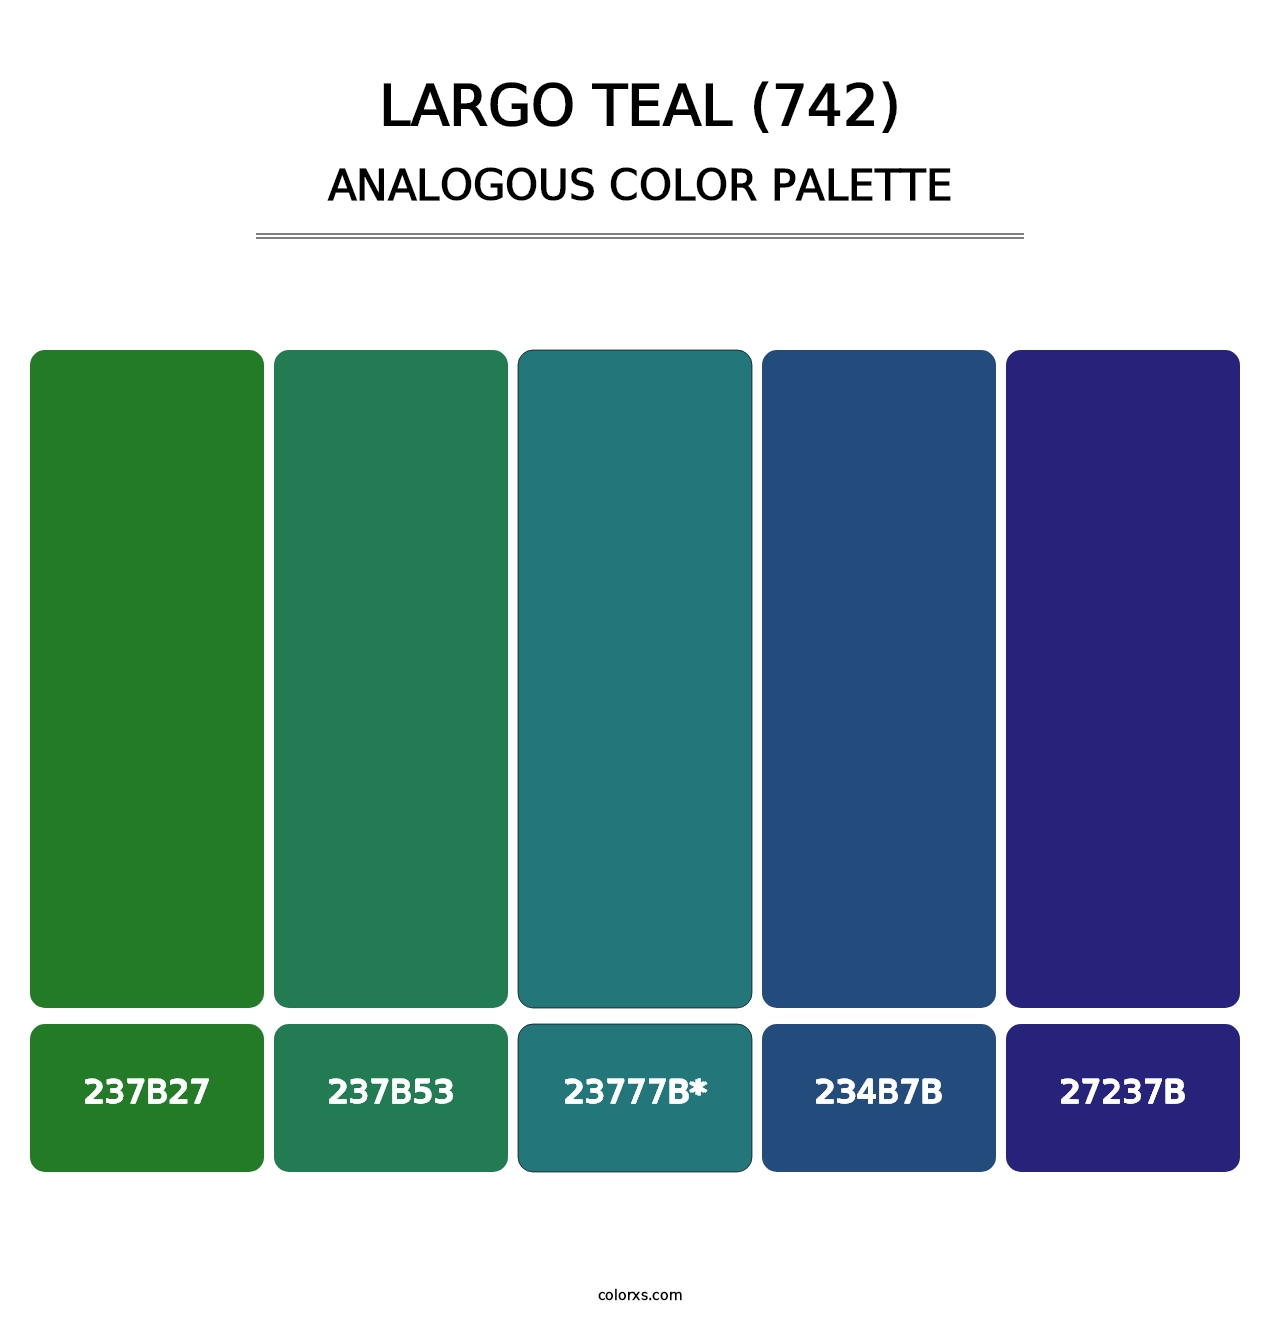 Largo Teal (742) - Analogous Color Palette